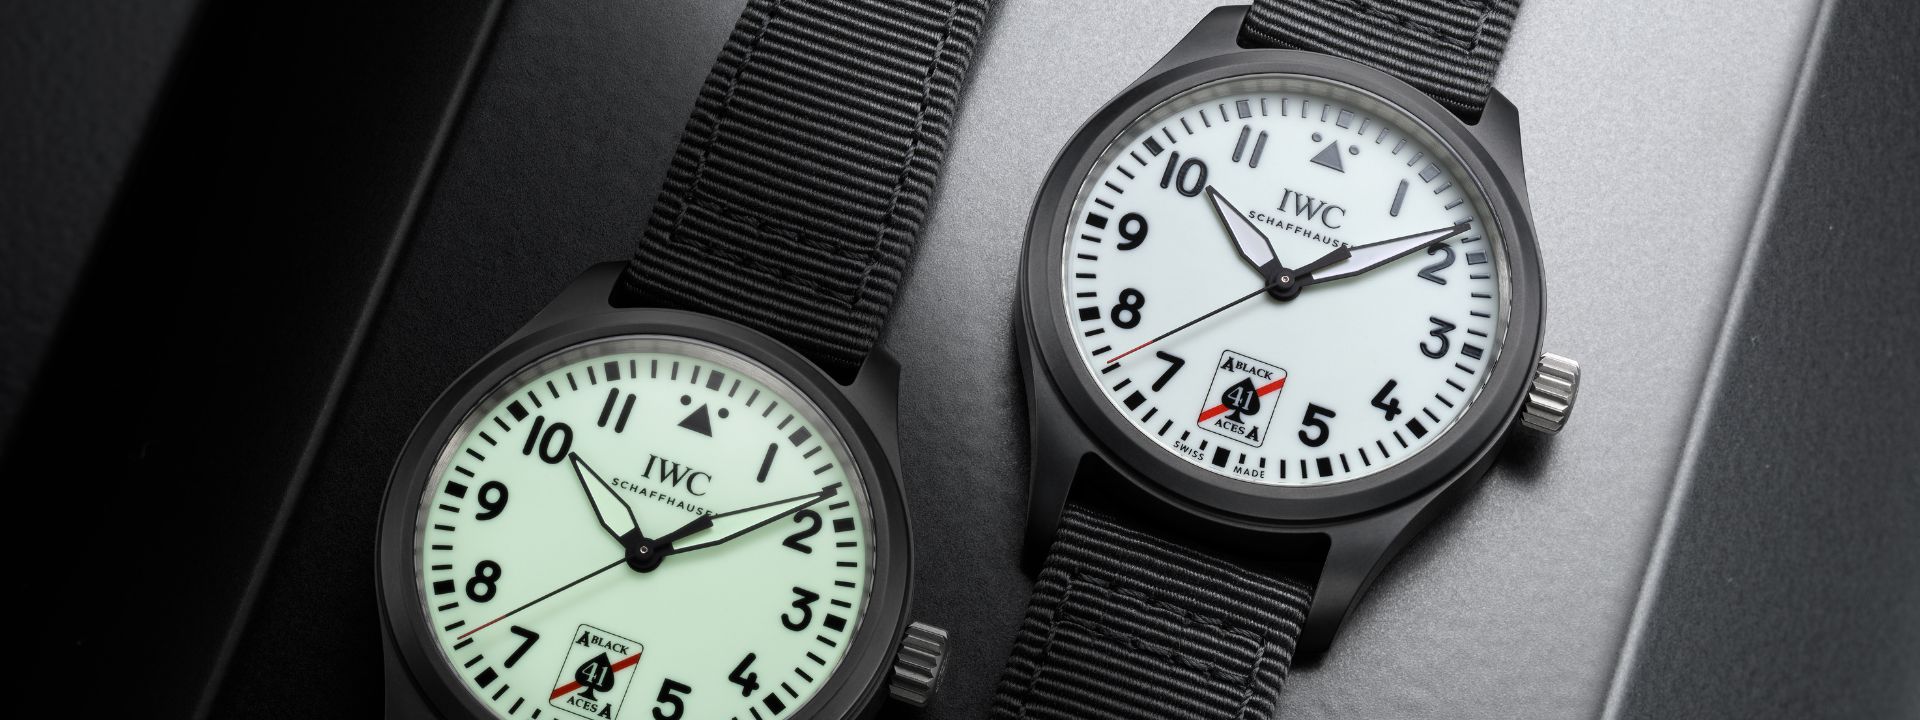 No momento você está vendo IWC Schaffhausen apresenta seu primeiro relógio Pilot com mostrador branco totalmente luminoso.